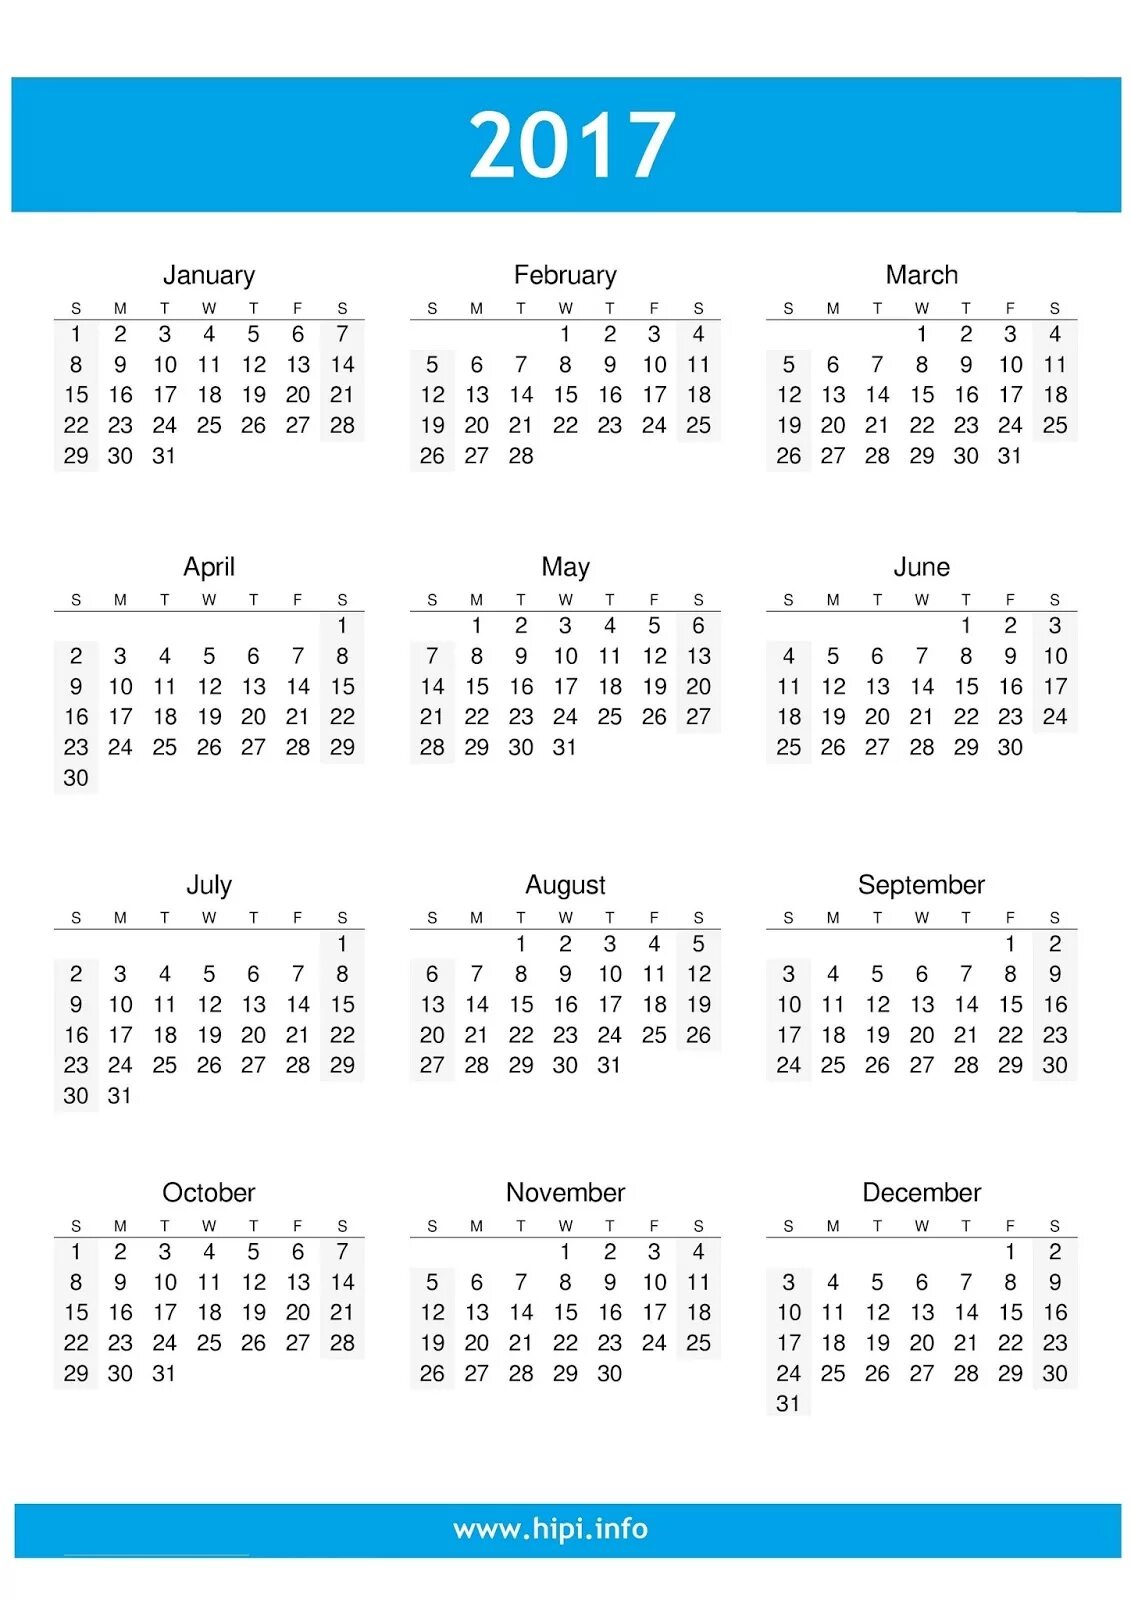 Календарь 2017 месяцам. Календарь 2017. Календарь 2017г. Календарь 2017 календарь. Календарь 2017 года по месяцам.